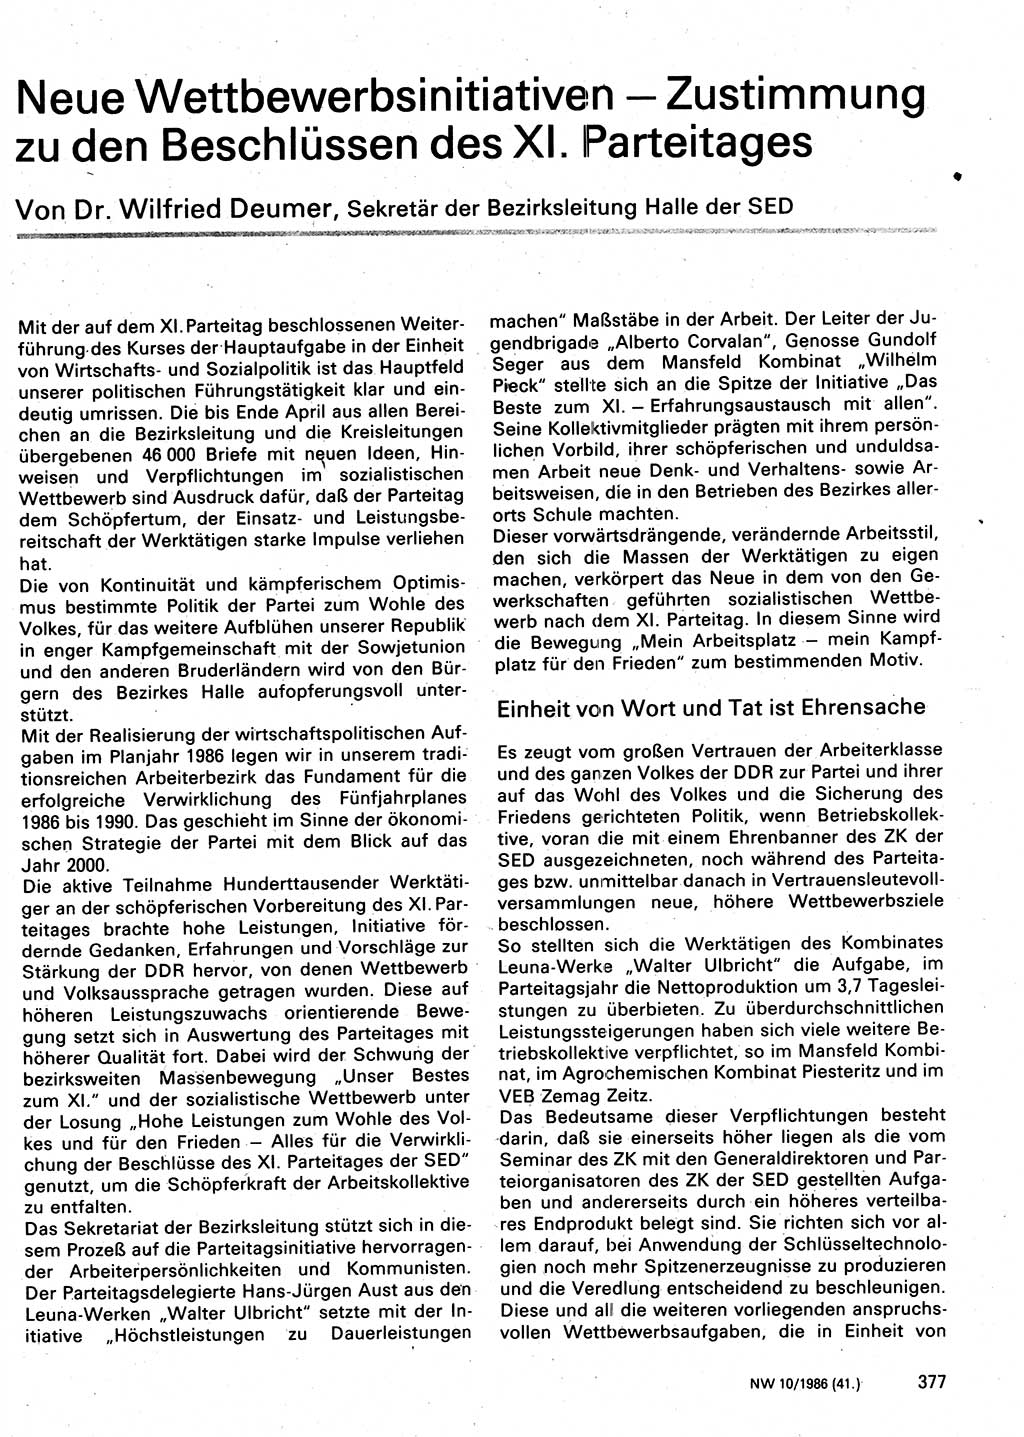 Neuer Weg (NW), Organ des Zentralkomitees (ZK) der SED (Sozialistische Einheitspartei Deutschlands) für Fragen des Parteilebens, 41. Jahrgang [Deutsche Demokratische Republik (DDR)] 1986, Seite 377 (NW ZK SED DDR 1986, S. 377)